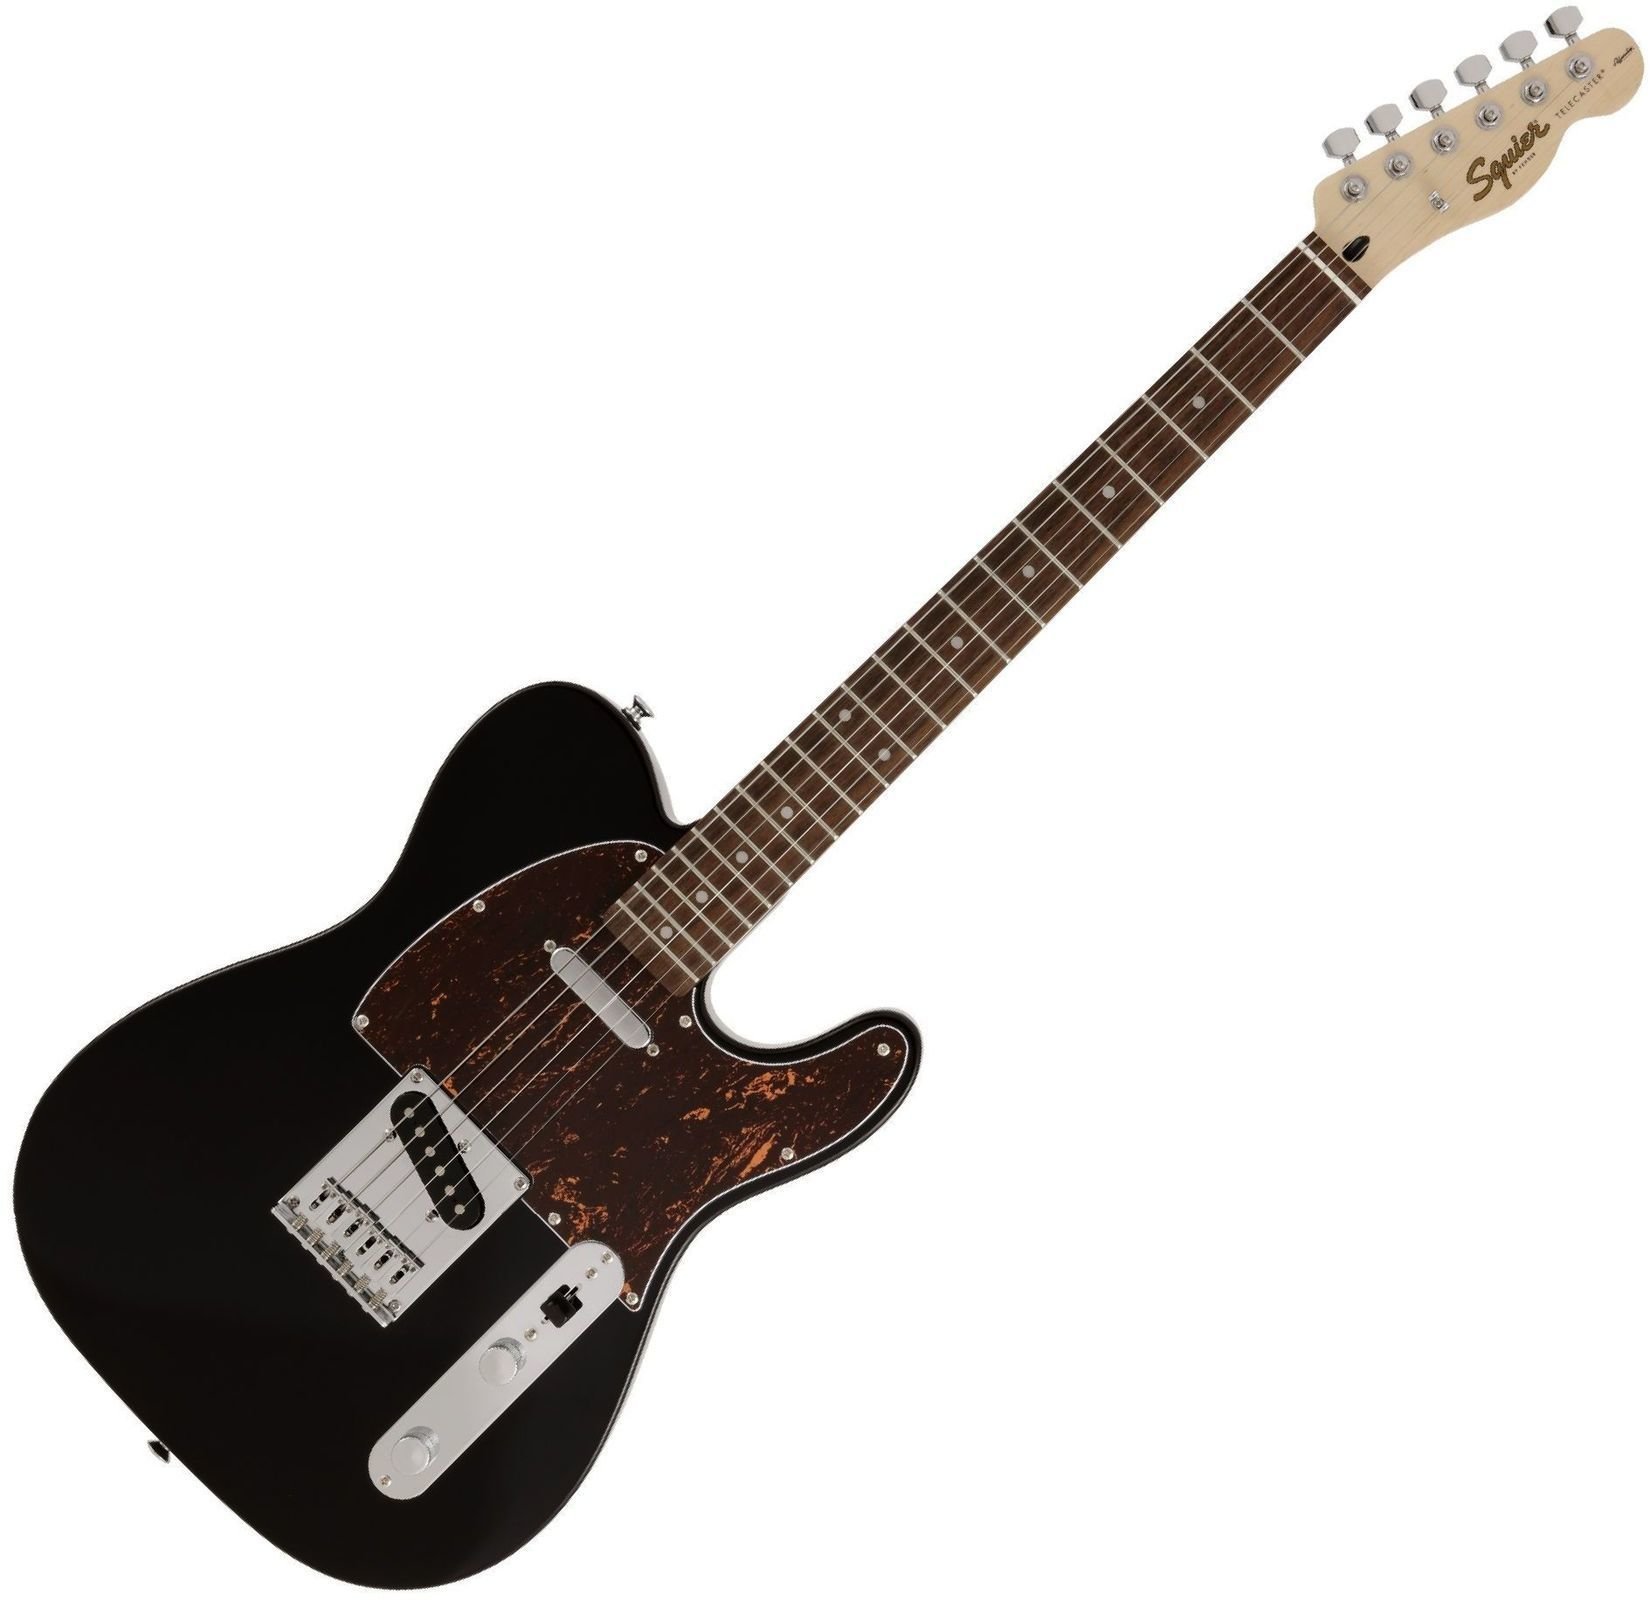 Ηλεκτρική Κιθάρα Fender Squier FSR Affinity Series Telecaster IL Tortoiseshell Pickguard Black